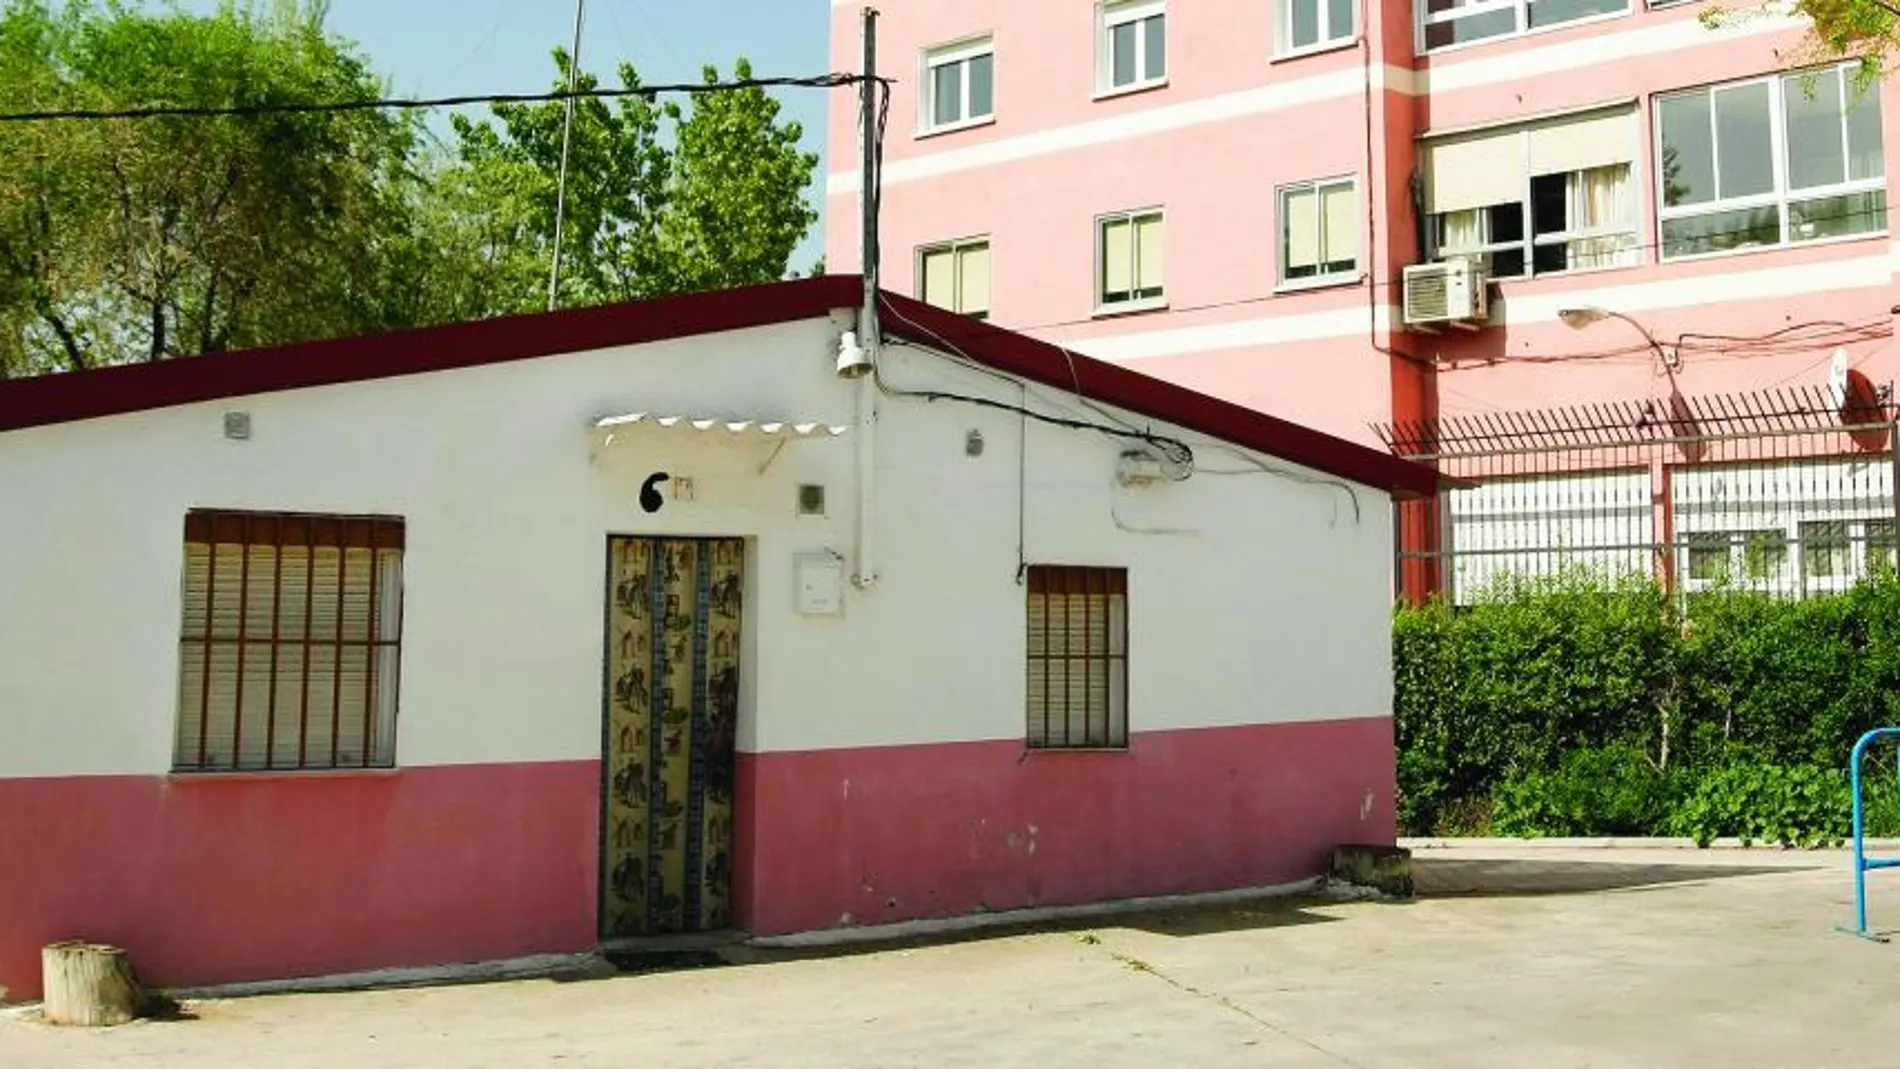 La vivienda municipal cuyos adjudicatarios se enfrentan ahora a un desahucio está en el denominado Barranco de la Fuente de Fuenlabrada